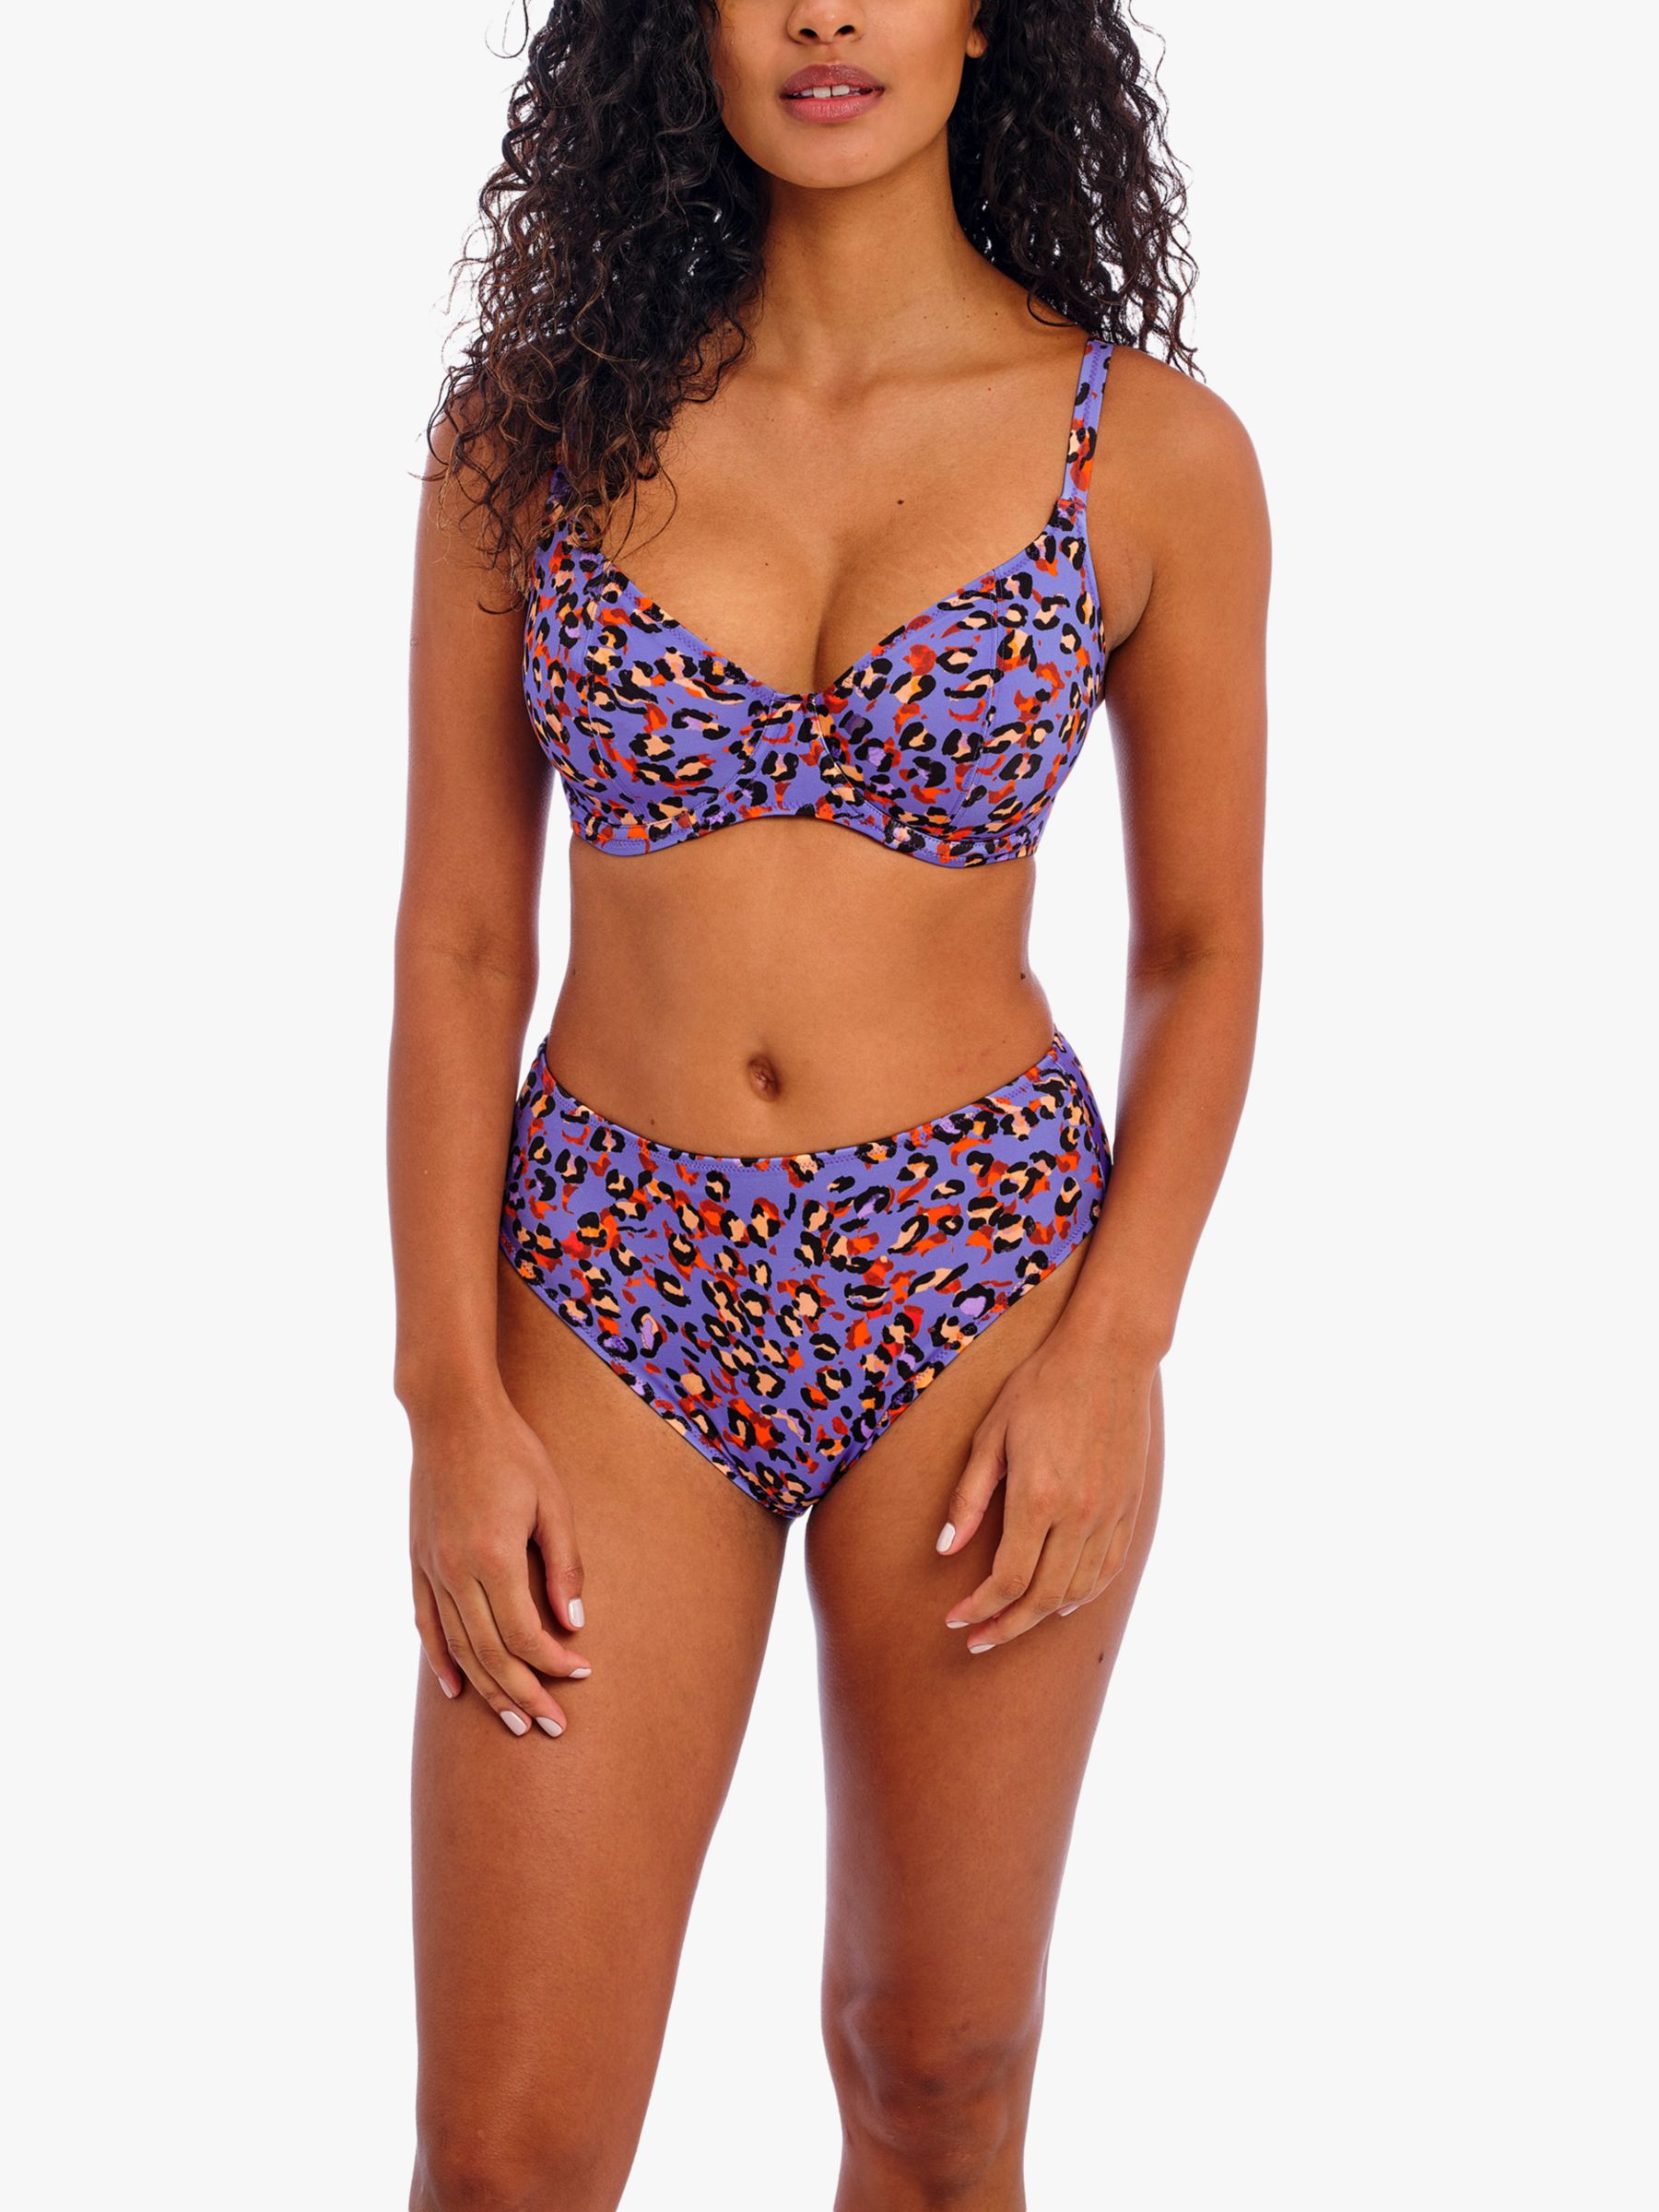 Freya San Tiago Nights Leopard Print High Waist Bikini Bottoms, Blue/Multi, S